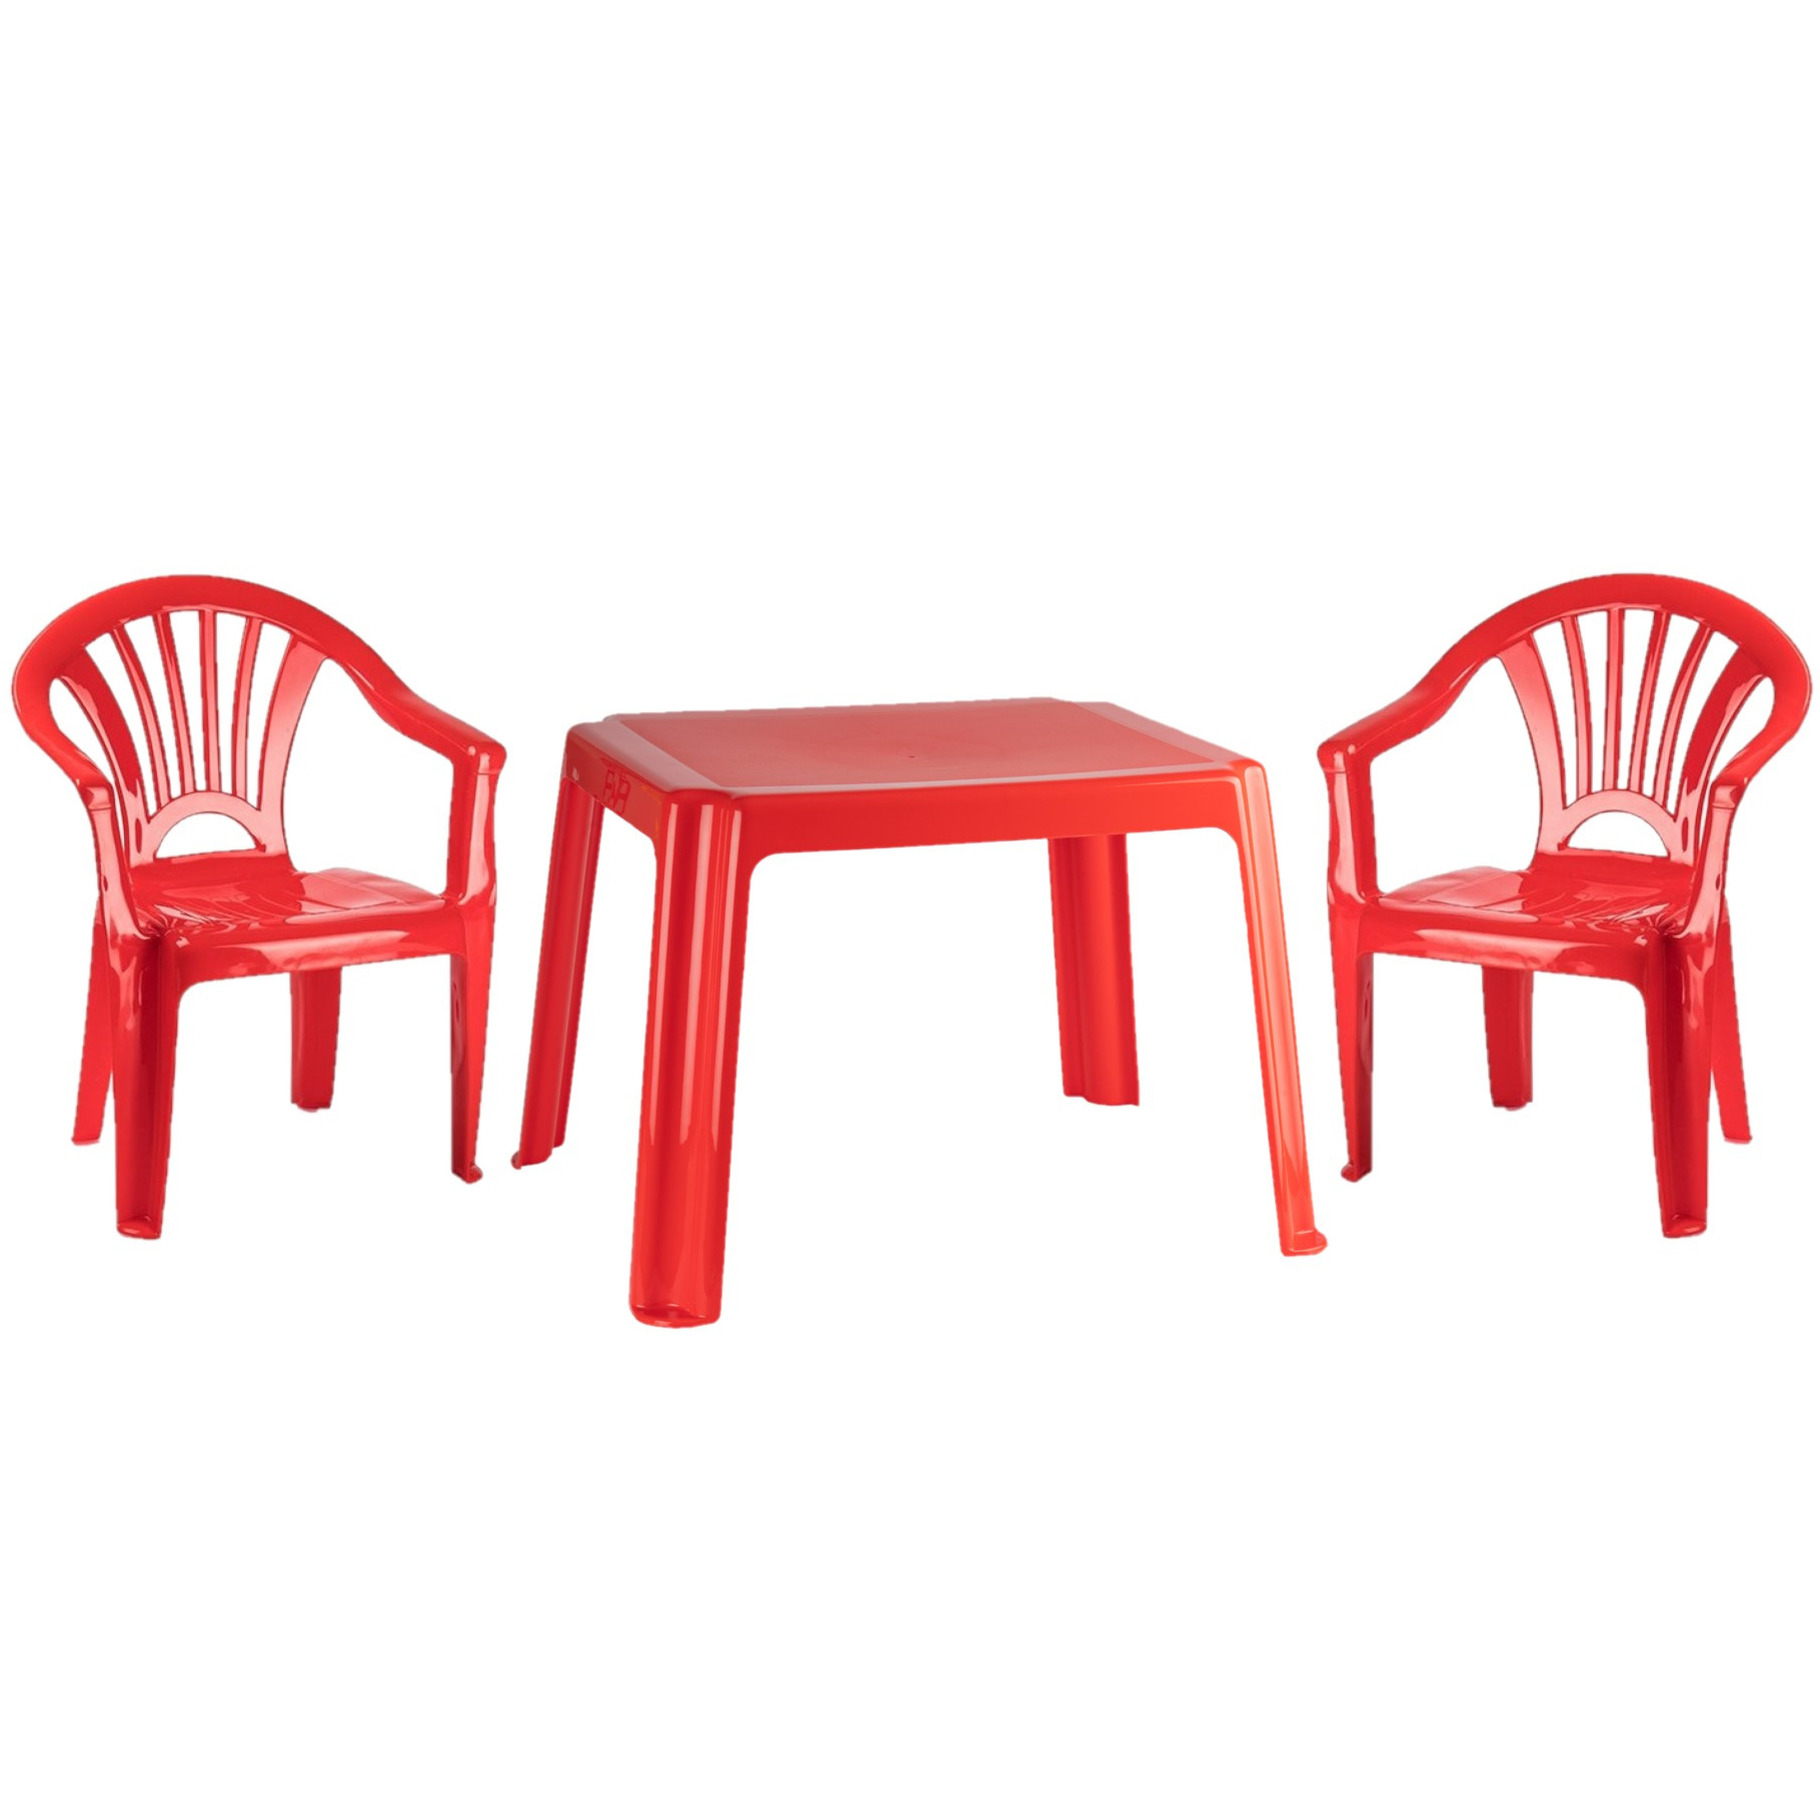 Kunststof kinder meubel set tafel met 2 stoelen rood